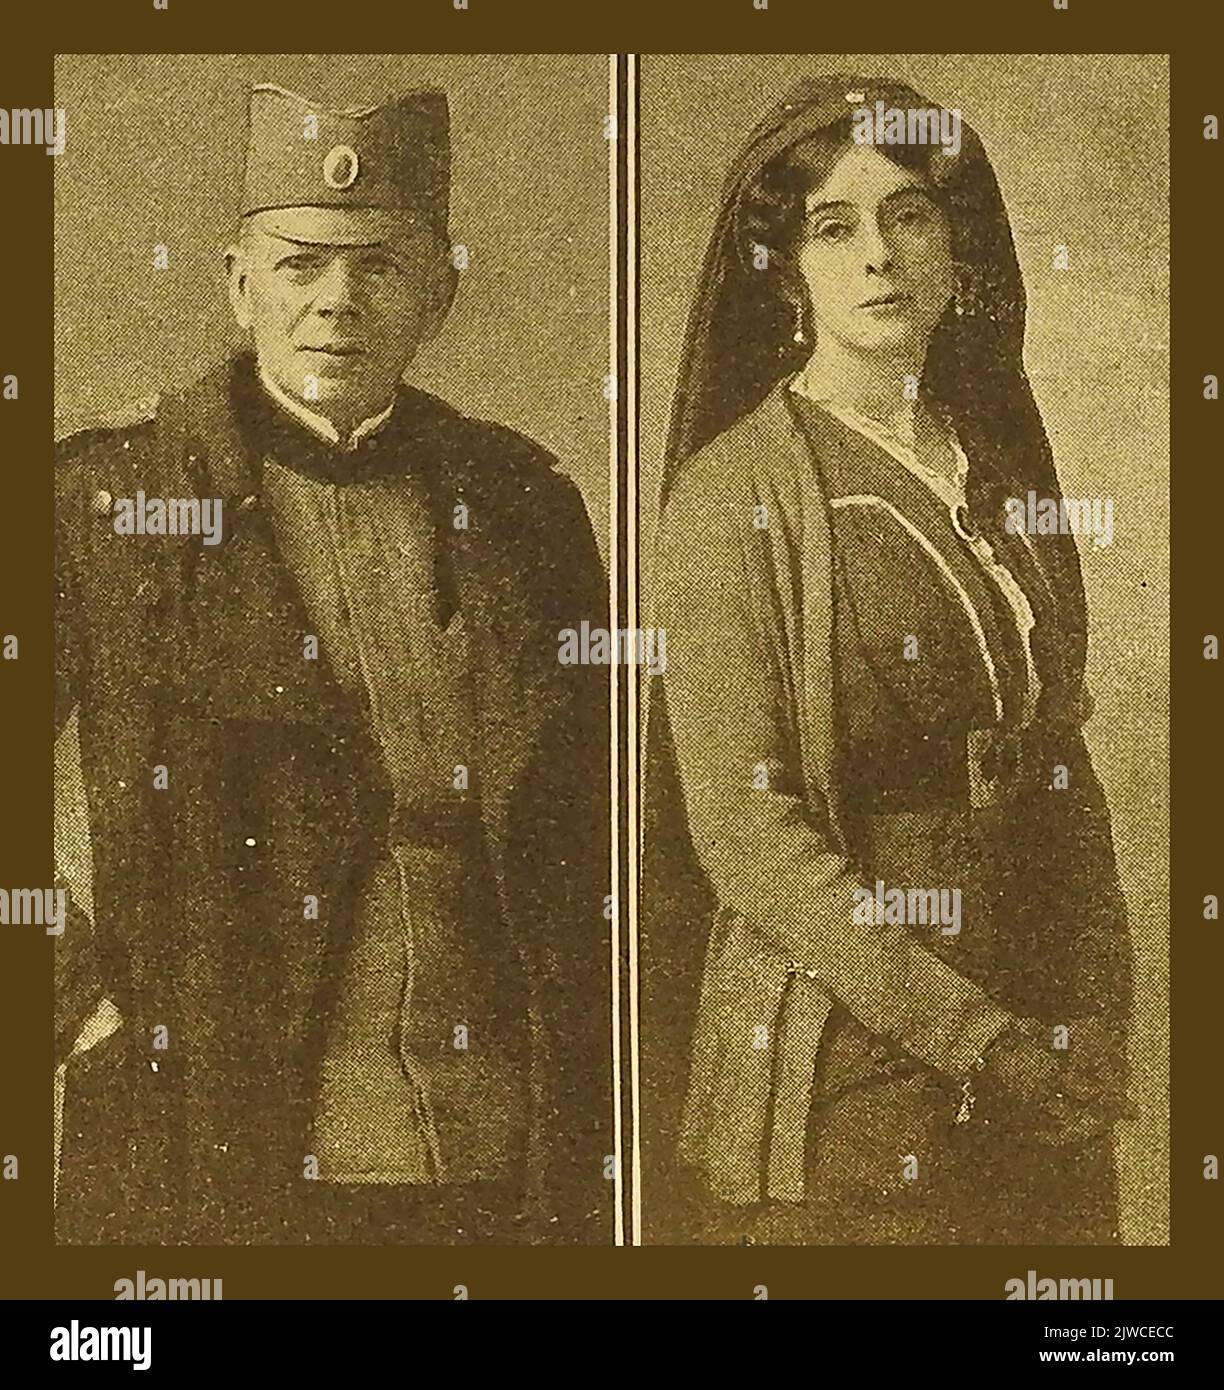 Vieux portraits de Claude Askew (1865 – 1917) et de sa femme Alice (1874 – 1917), née Leake (les deux auteurs prolifiques). Il s'est rendu en Serbie avec le premier hôpital de campagne britannique de la première Guerre mondiale et est devenu un major honoraire dans les forces de résistance serbes. Auparavant, ils avaient tous deux été impliqués dans le corps d'ambulance Munro à Furnes en Belgique. --- Stari portreti Kloda Askeua (1865 – 1917) i njegove supuge Alise (1874 – 1917) Nee Leake, (oba plodna autora). Otišao je u Srbiju sa prvom britanskom terenskom bolnicom u Prvom svetskom ratu. Banque D'Images